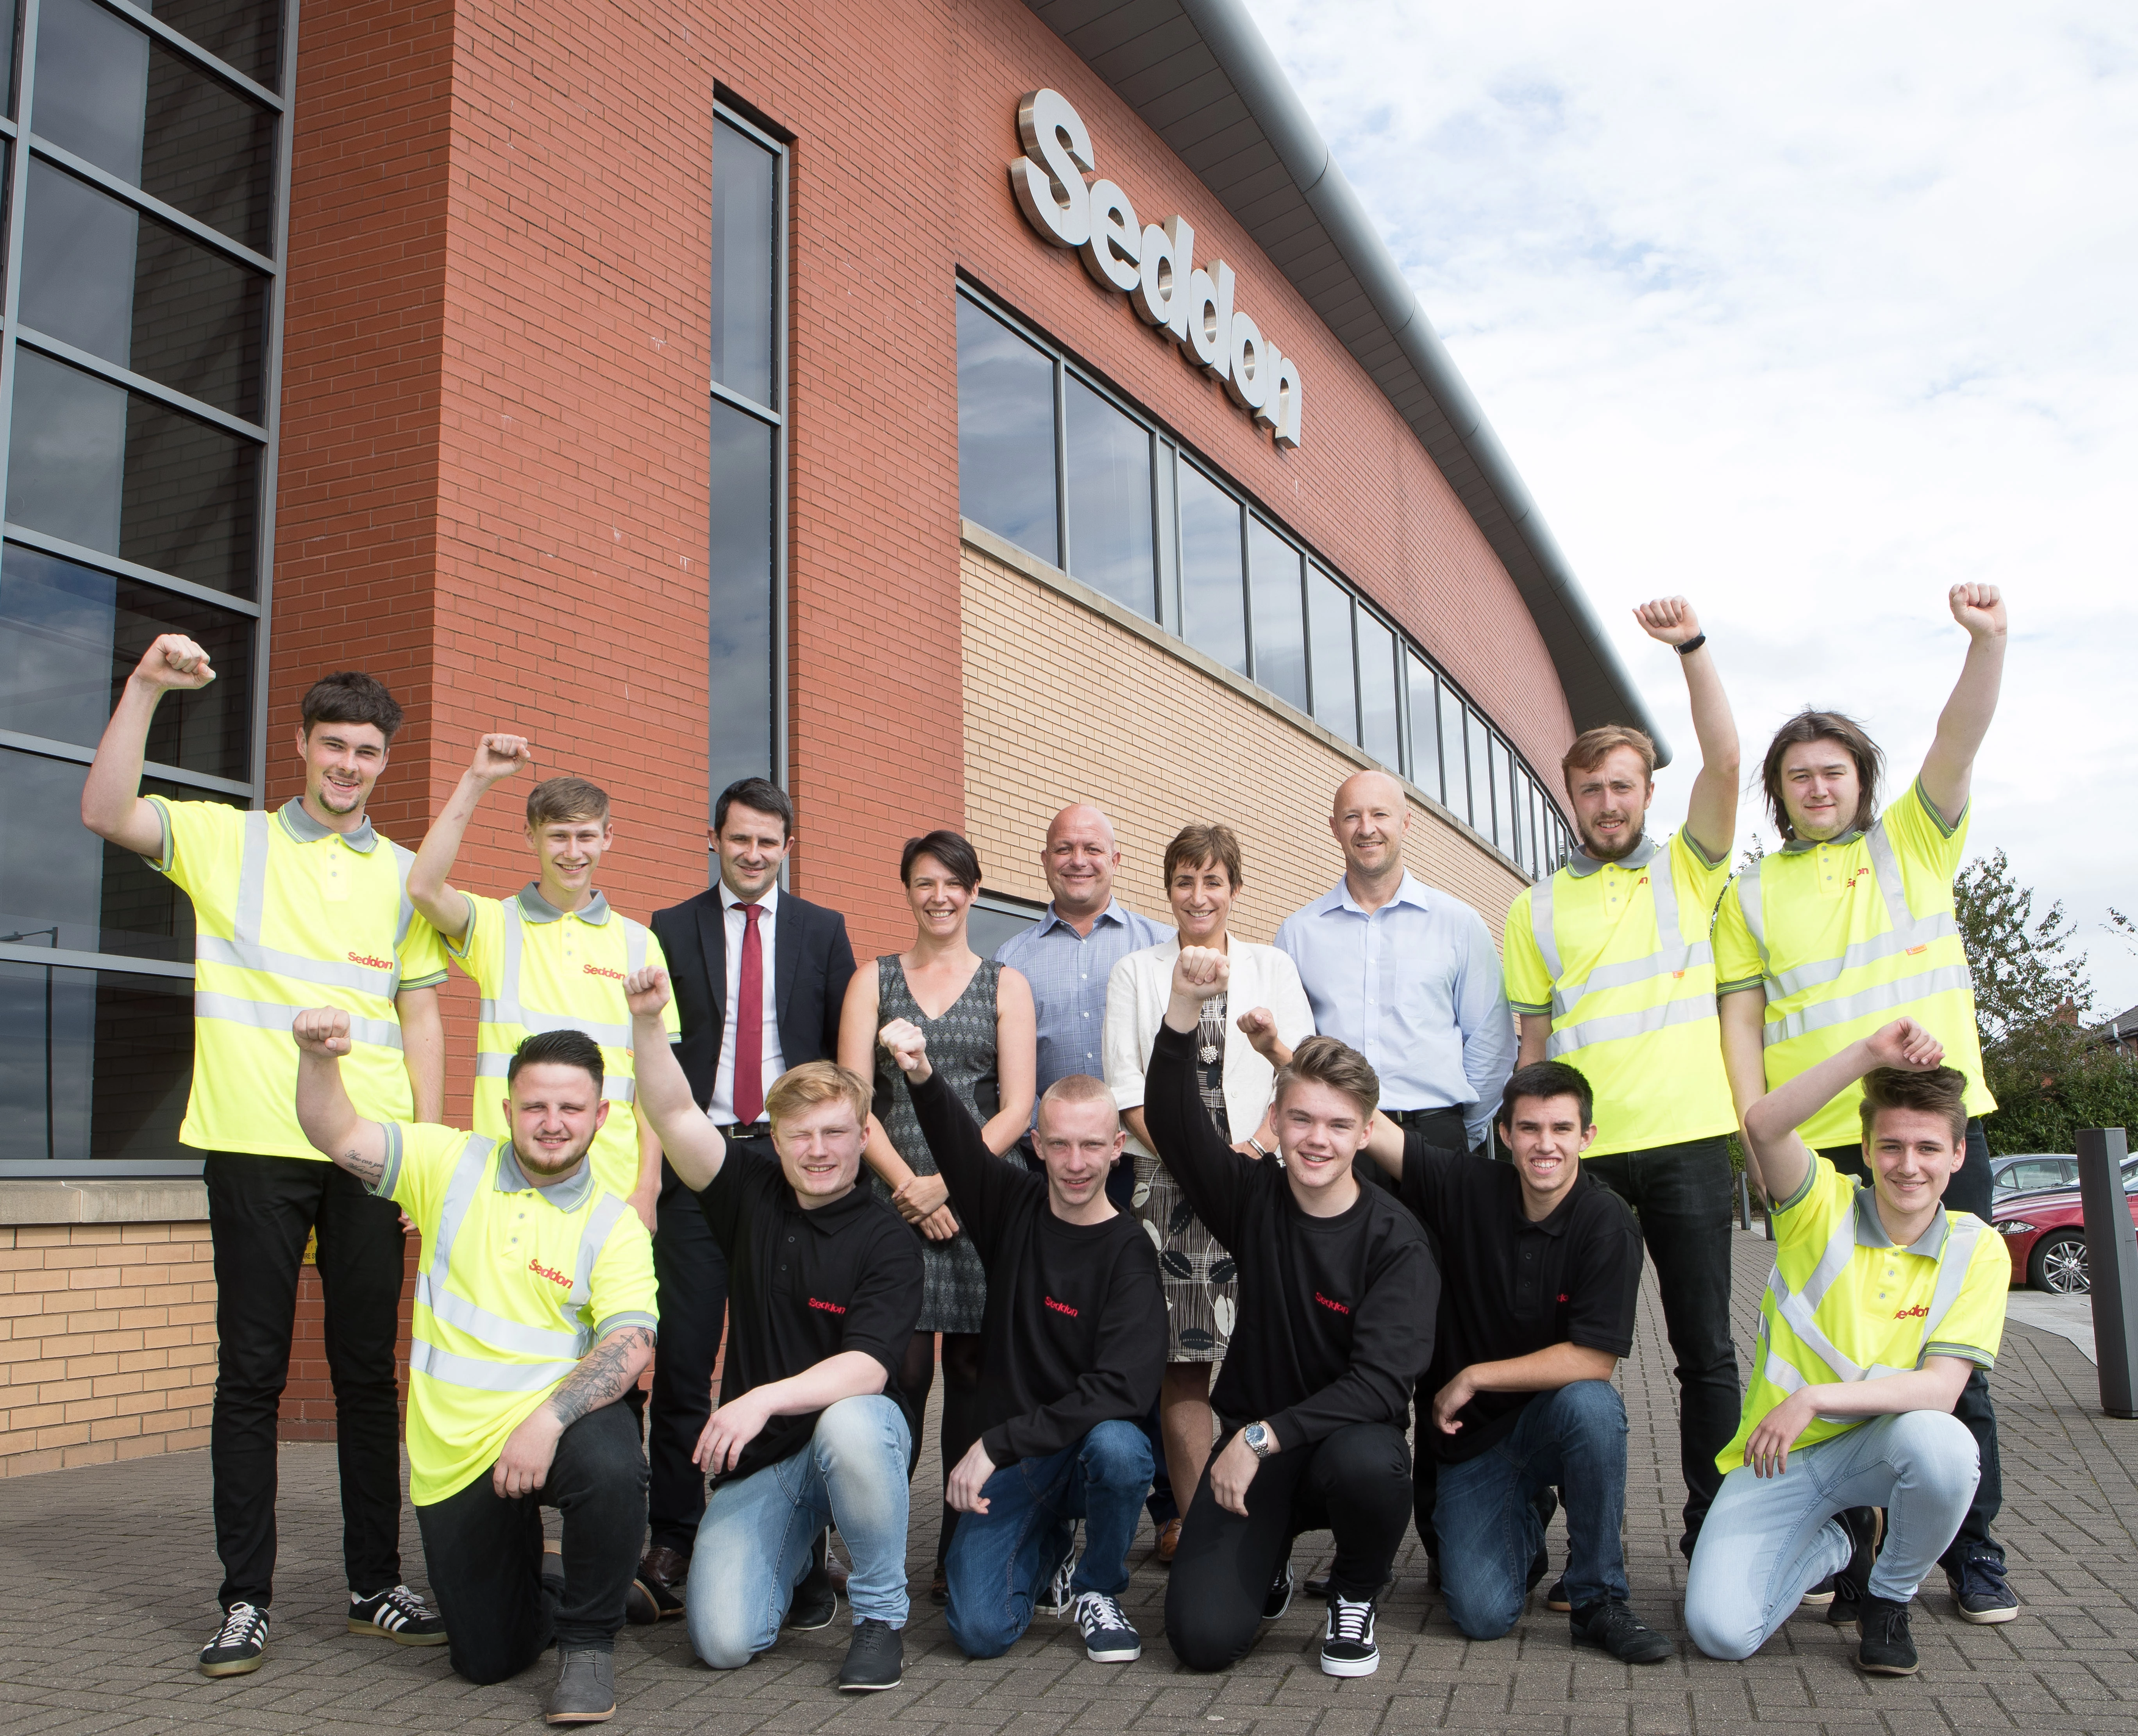 Seddon apprentices: the Class of 2017